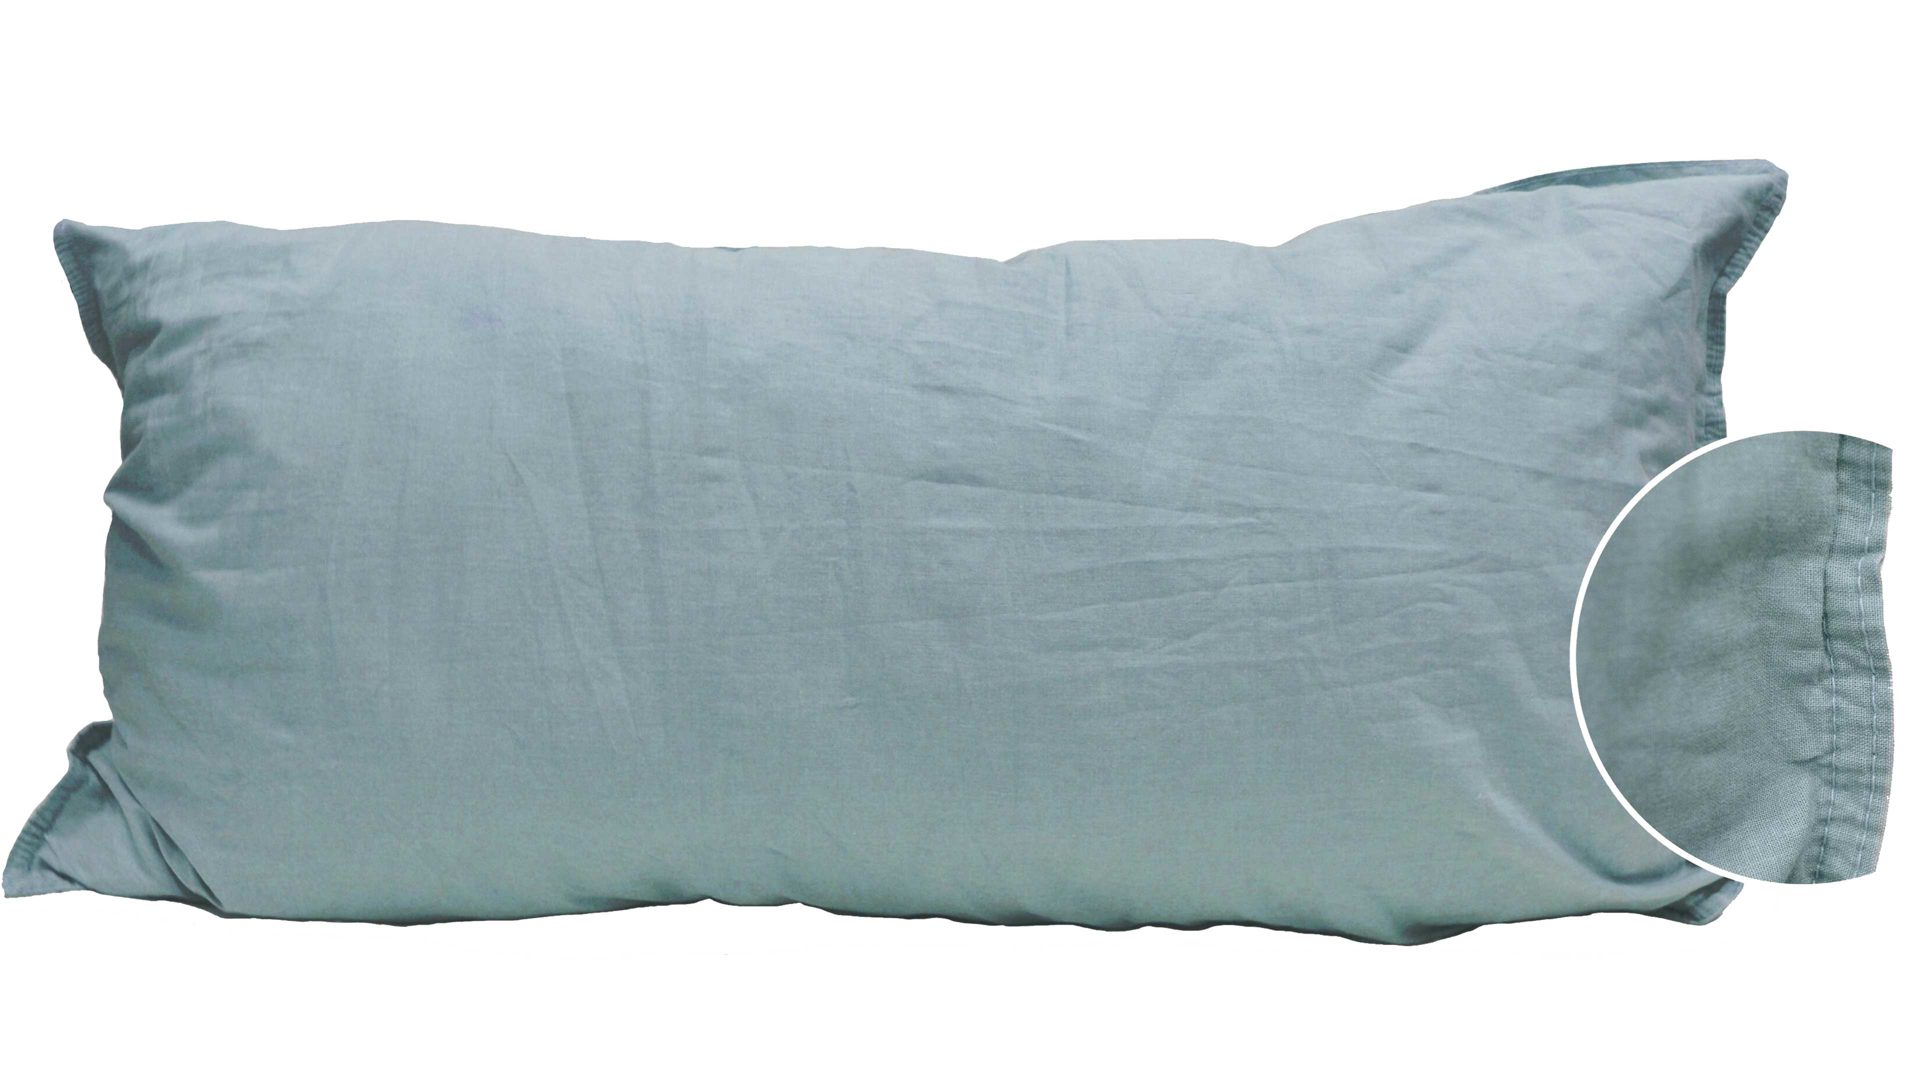 Kissenbezug /-hülle H.g. hahn haustextilien aus Stoff in Grün HAHN Kissenbezug Stone Washed flaschengrüne Baumwolle – ca. 40 x 80 cm